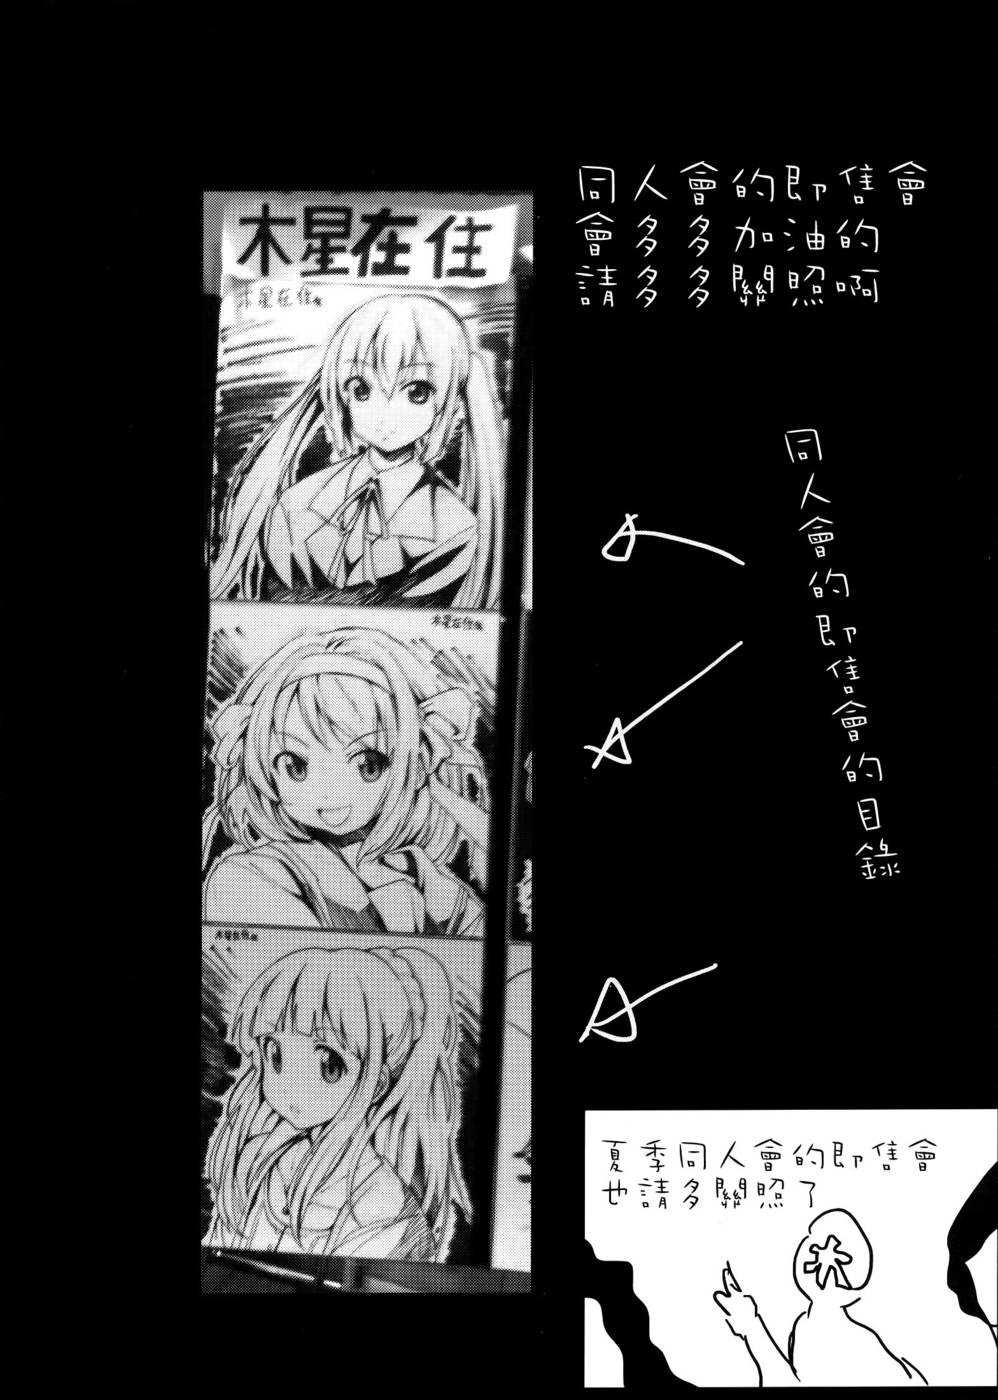 Wcxxx Video - Public Toilet Kotoura-san-Read-Hentai Manga Hentai Comic - Page: 23 -  Online porn video at mobile